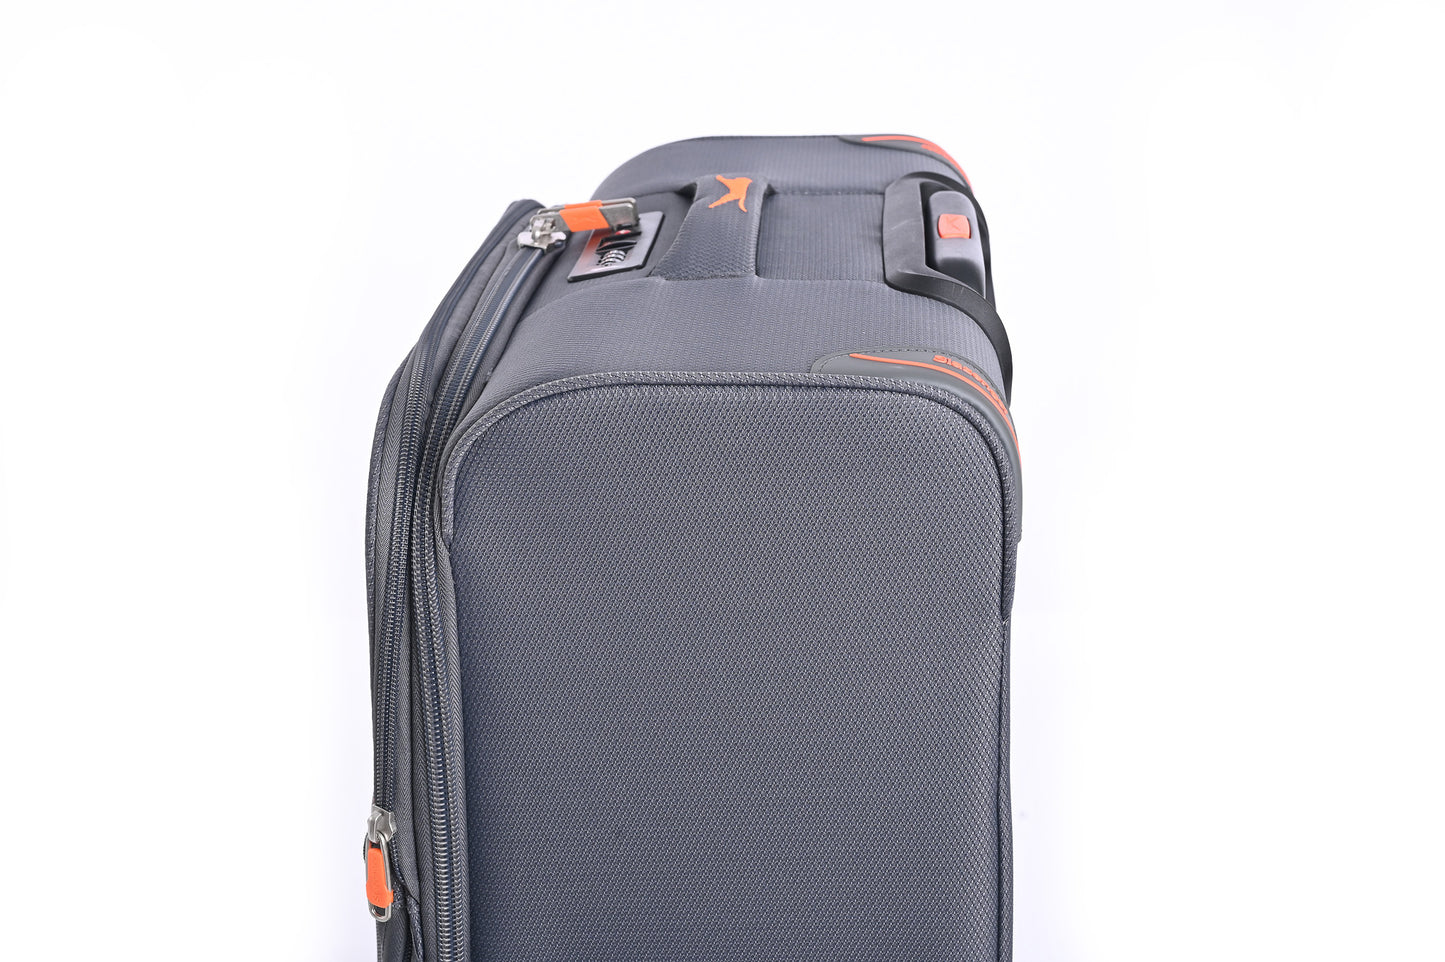 מזוודה מבד גדולה 28" דגם BARCELONA בצבע אפור